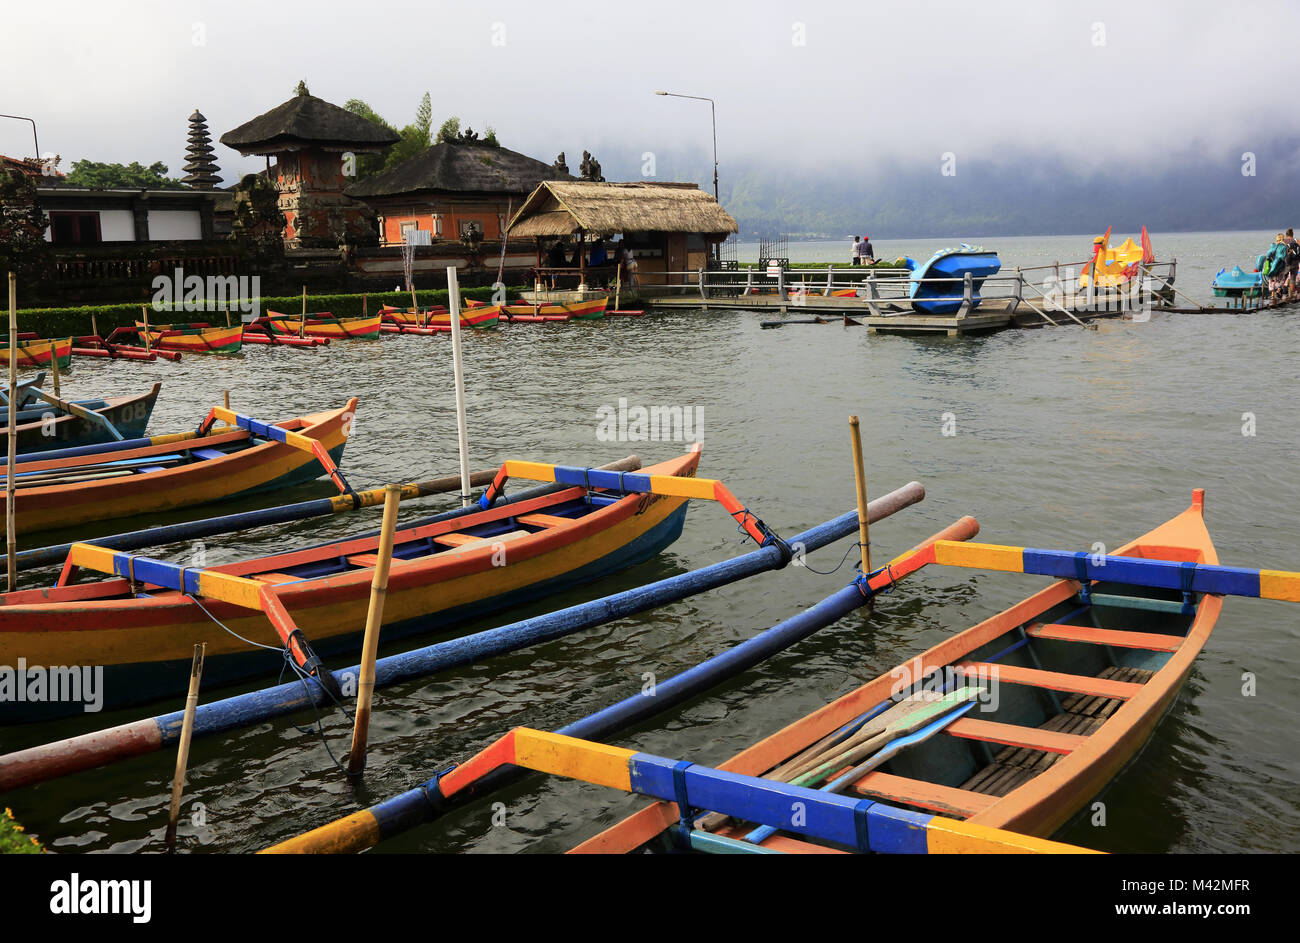 Jukungs die traditionellen Balinesischen Fischerbooten am Ufer des Lake Bratan mit Pura Ulun Danu Bratan Tempel im Hintergrund. Bali Indonesien Stockfoto